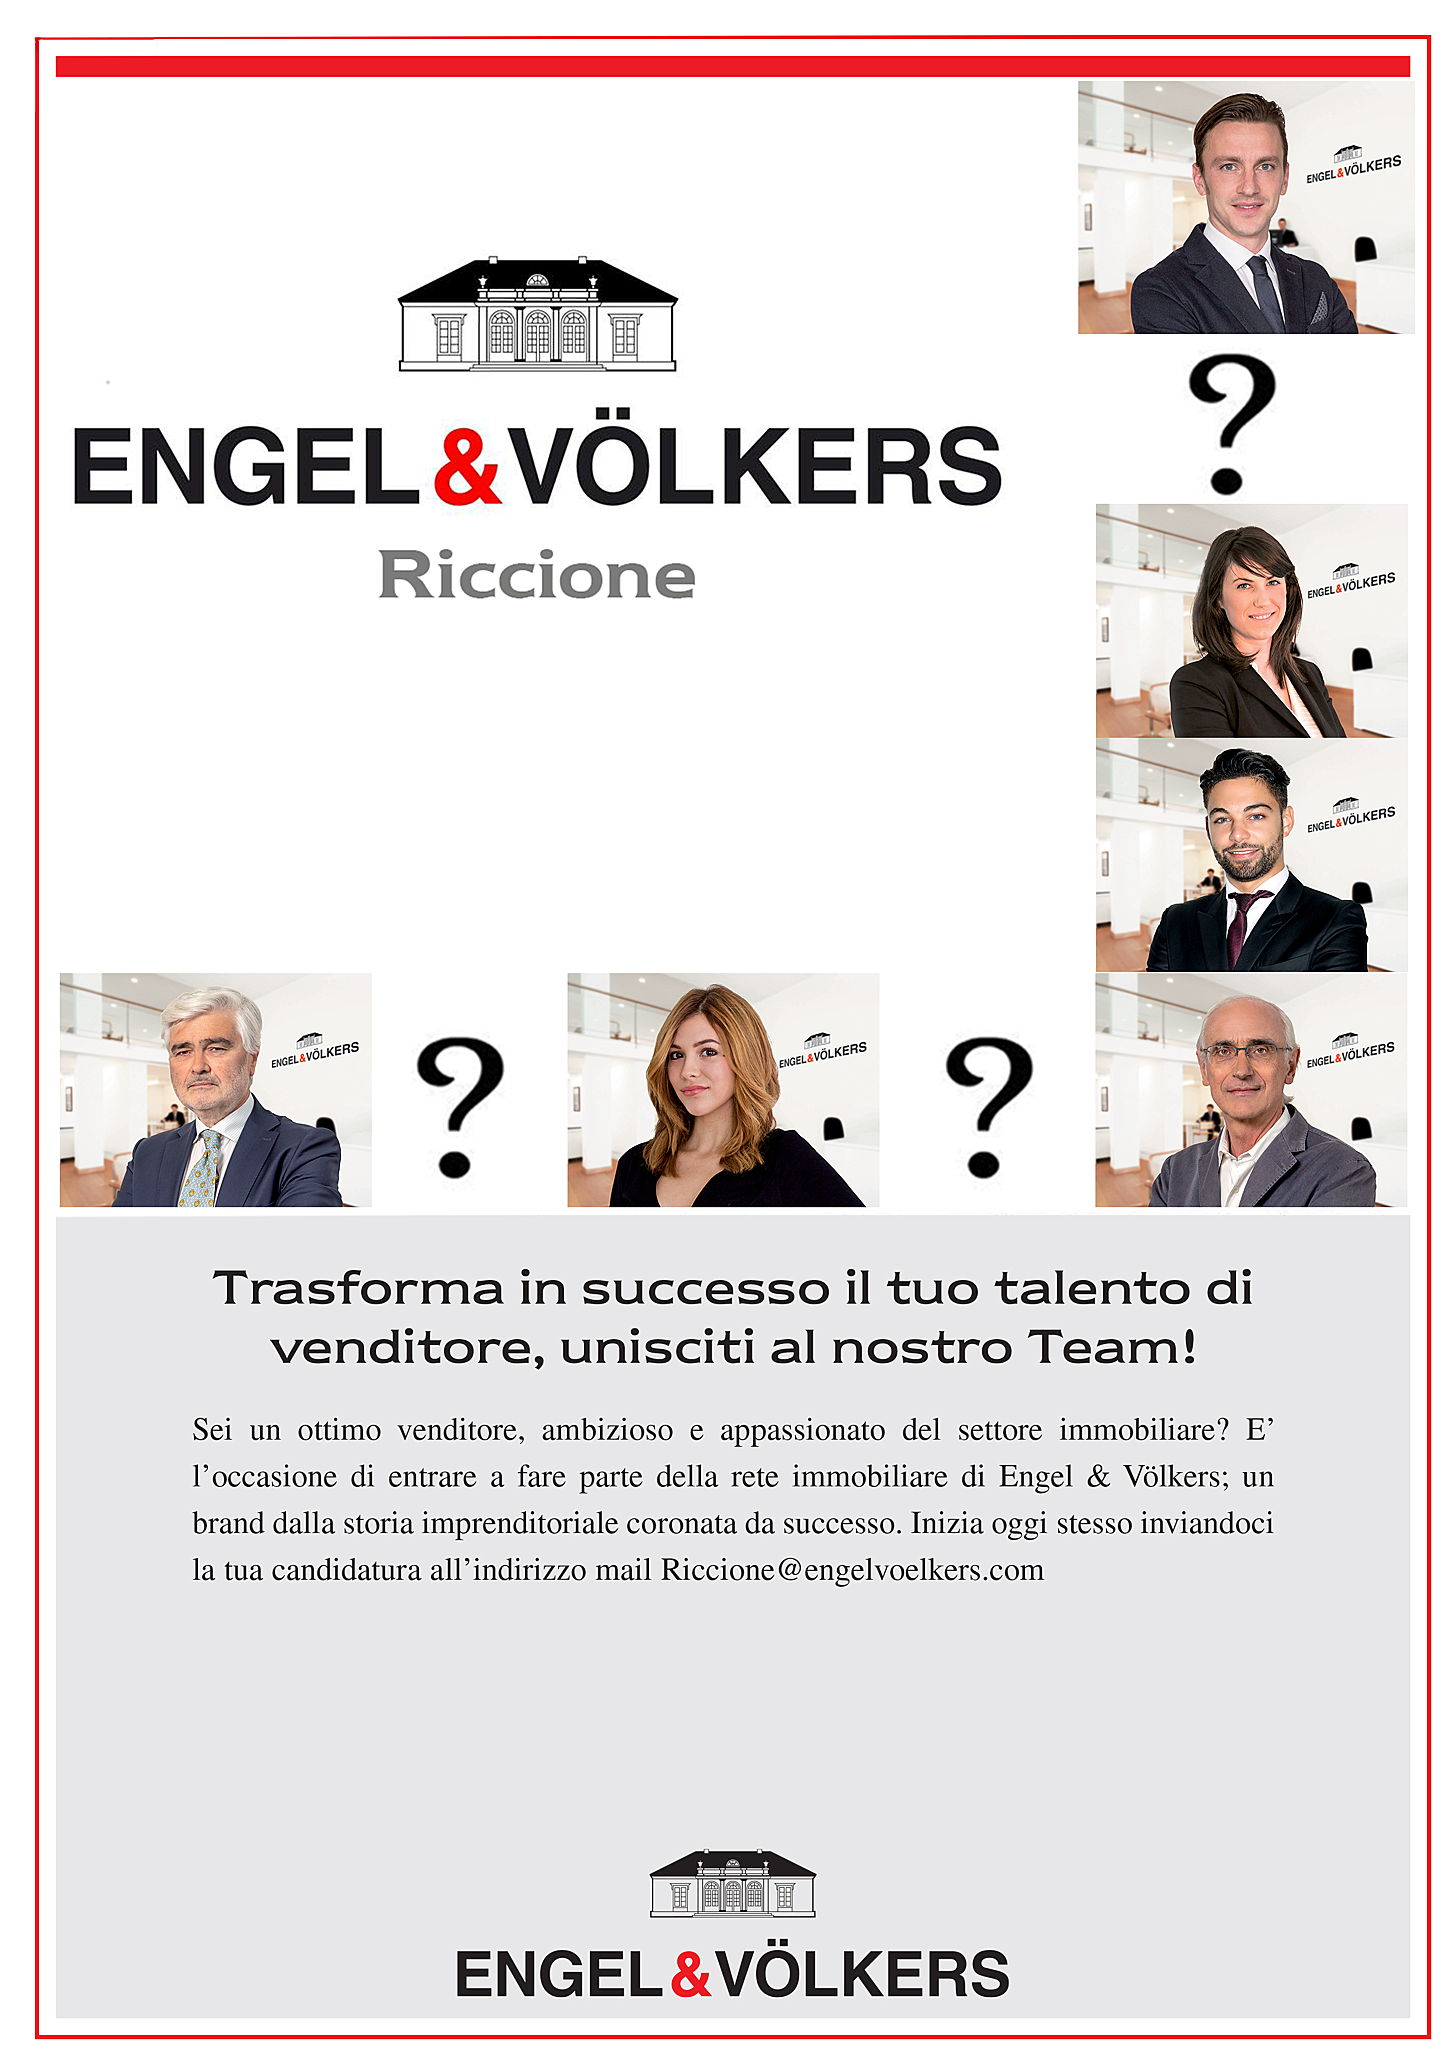  Riccione
- Recruiting foto team.jpg